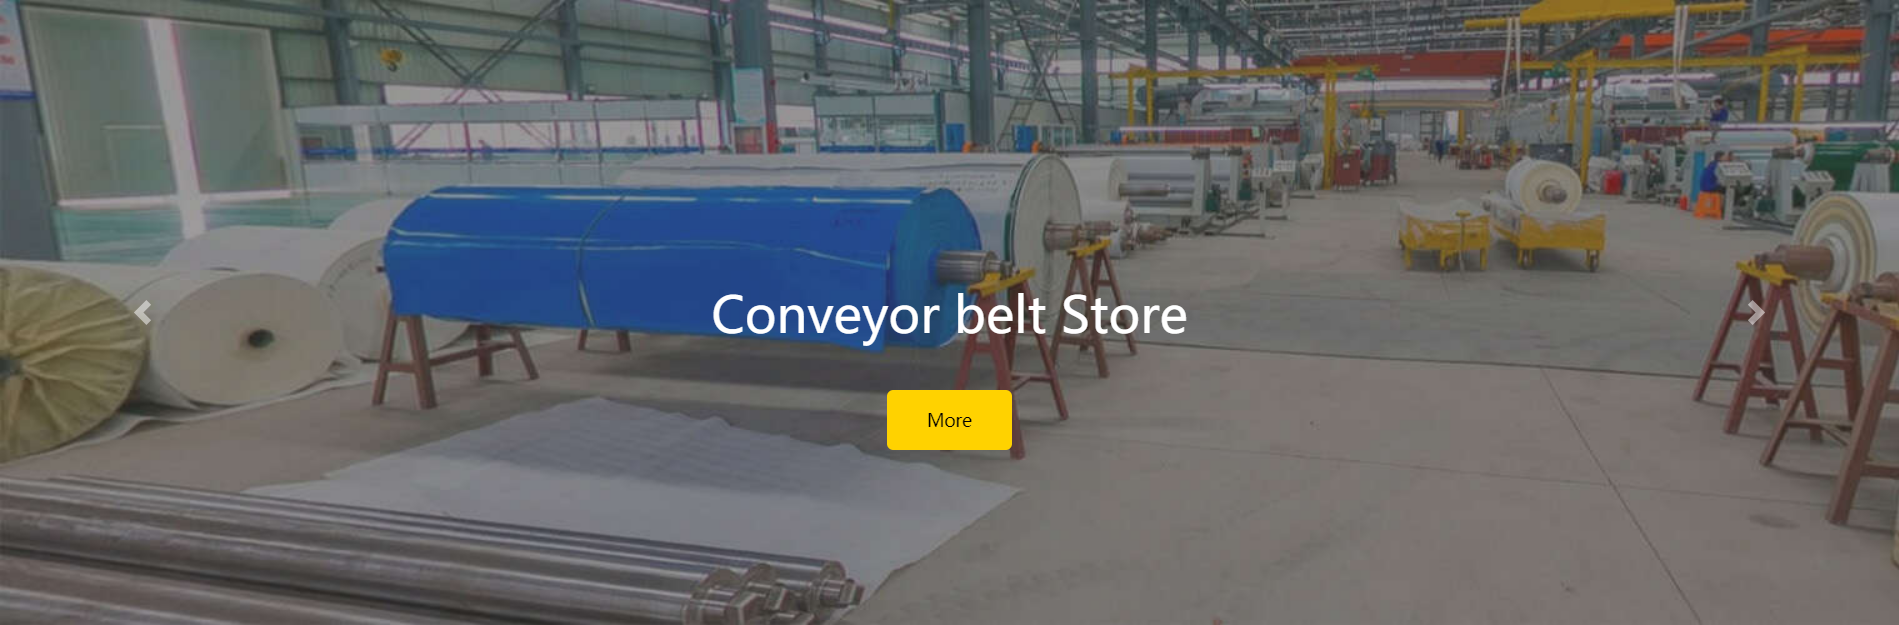 conveyor belt.png